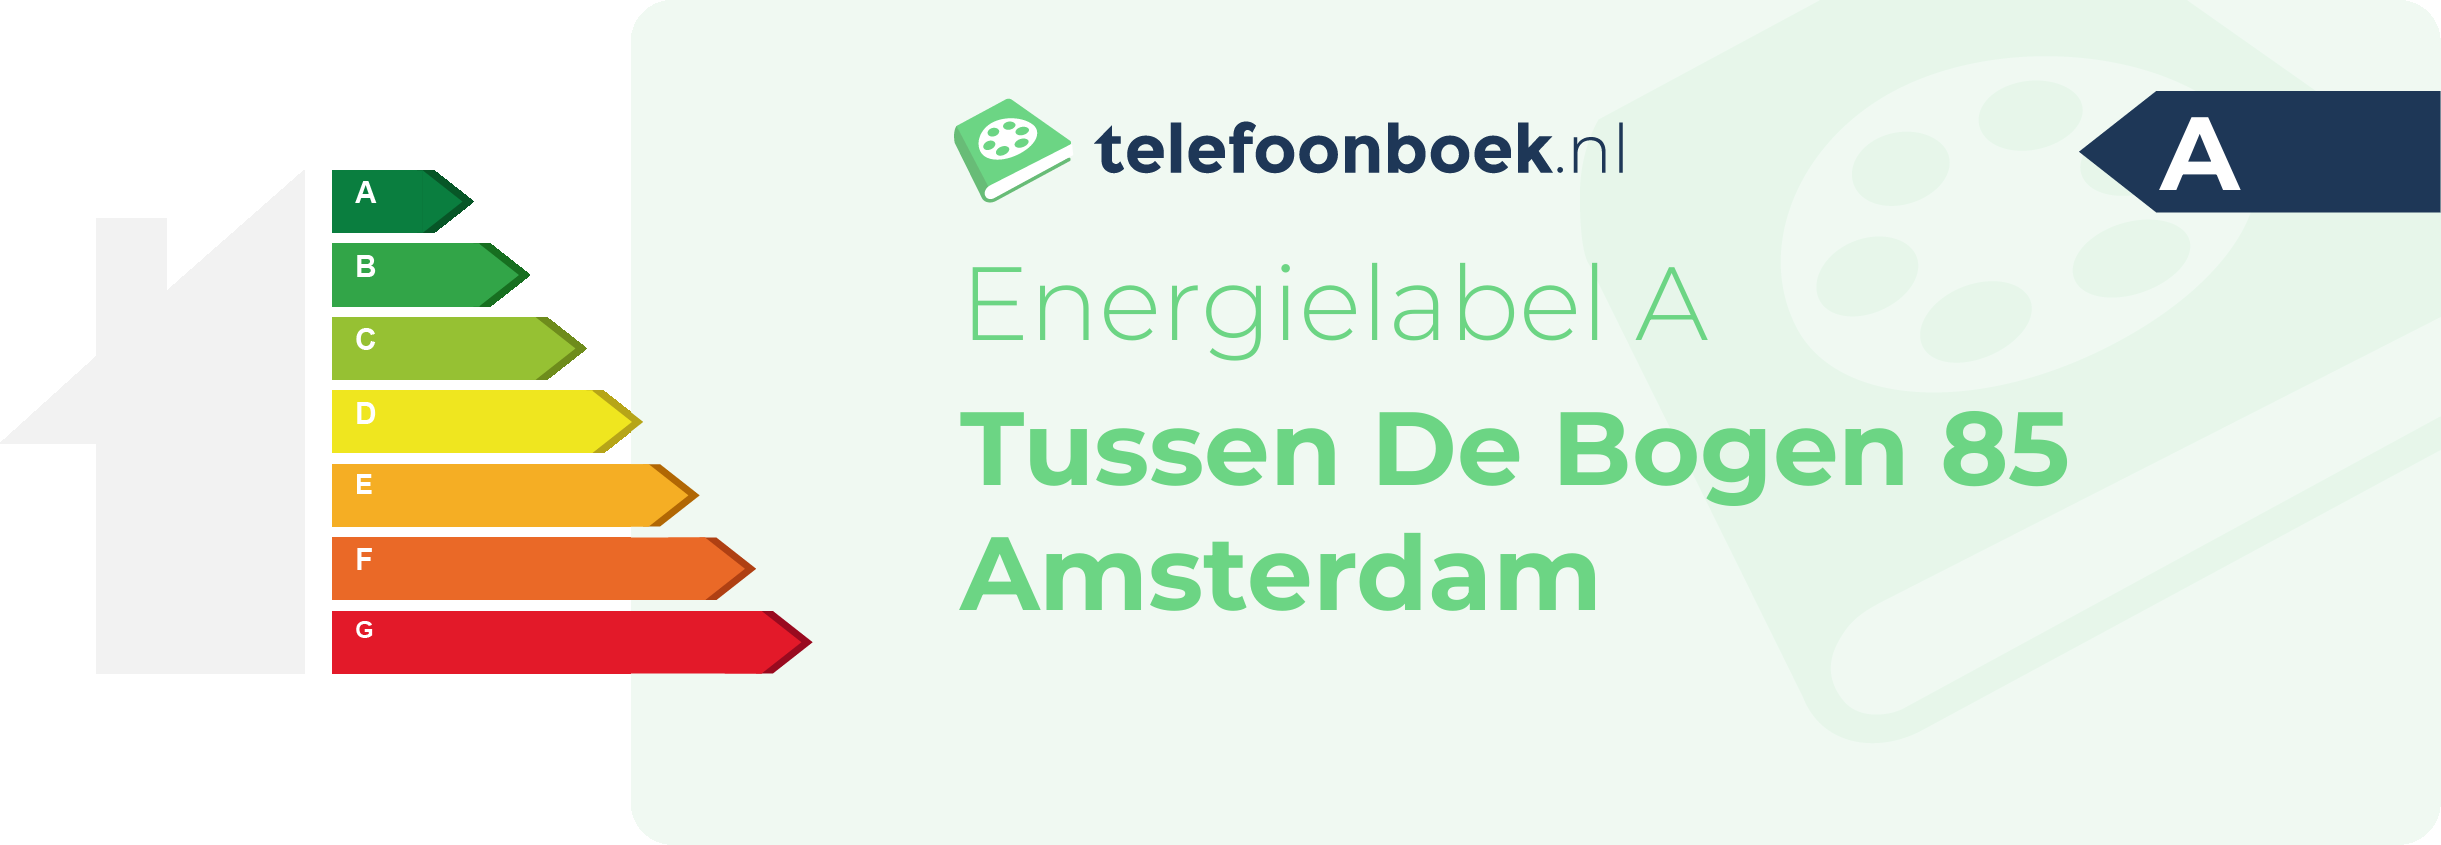 Energielabel Tussen De Bogen 85 Amsterdam